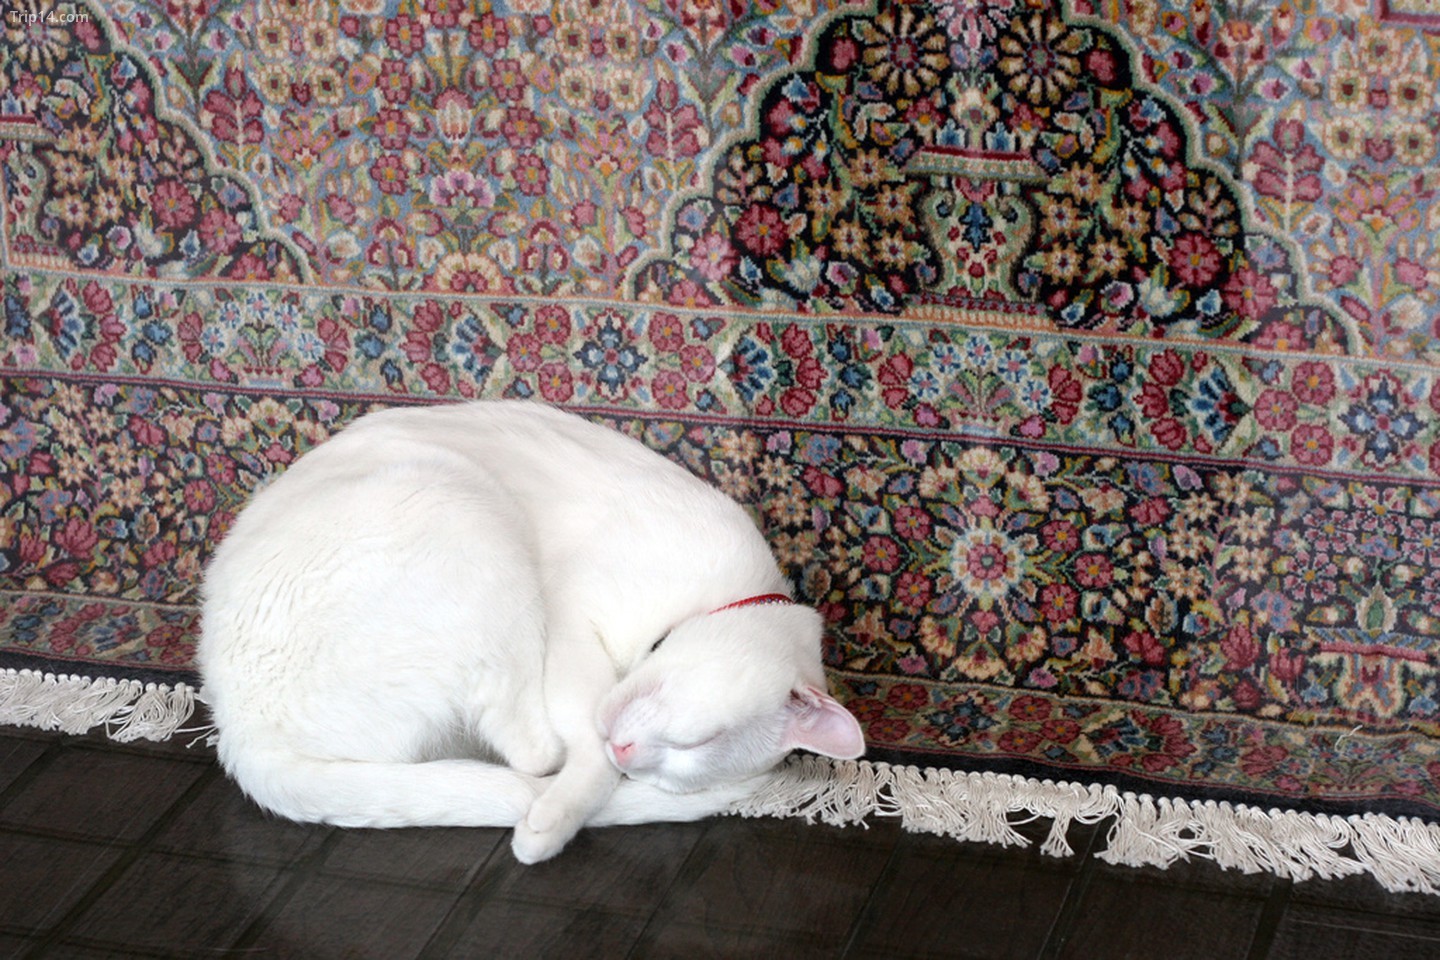  Tấm thảm Ba Tư và con mèo   |   